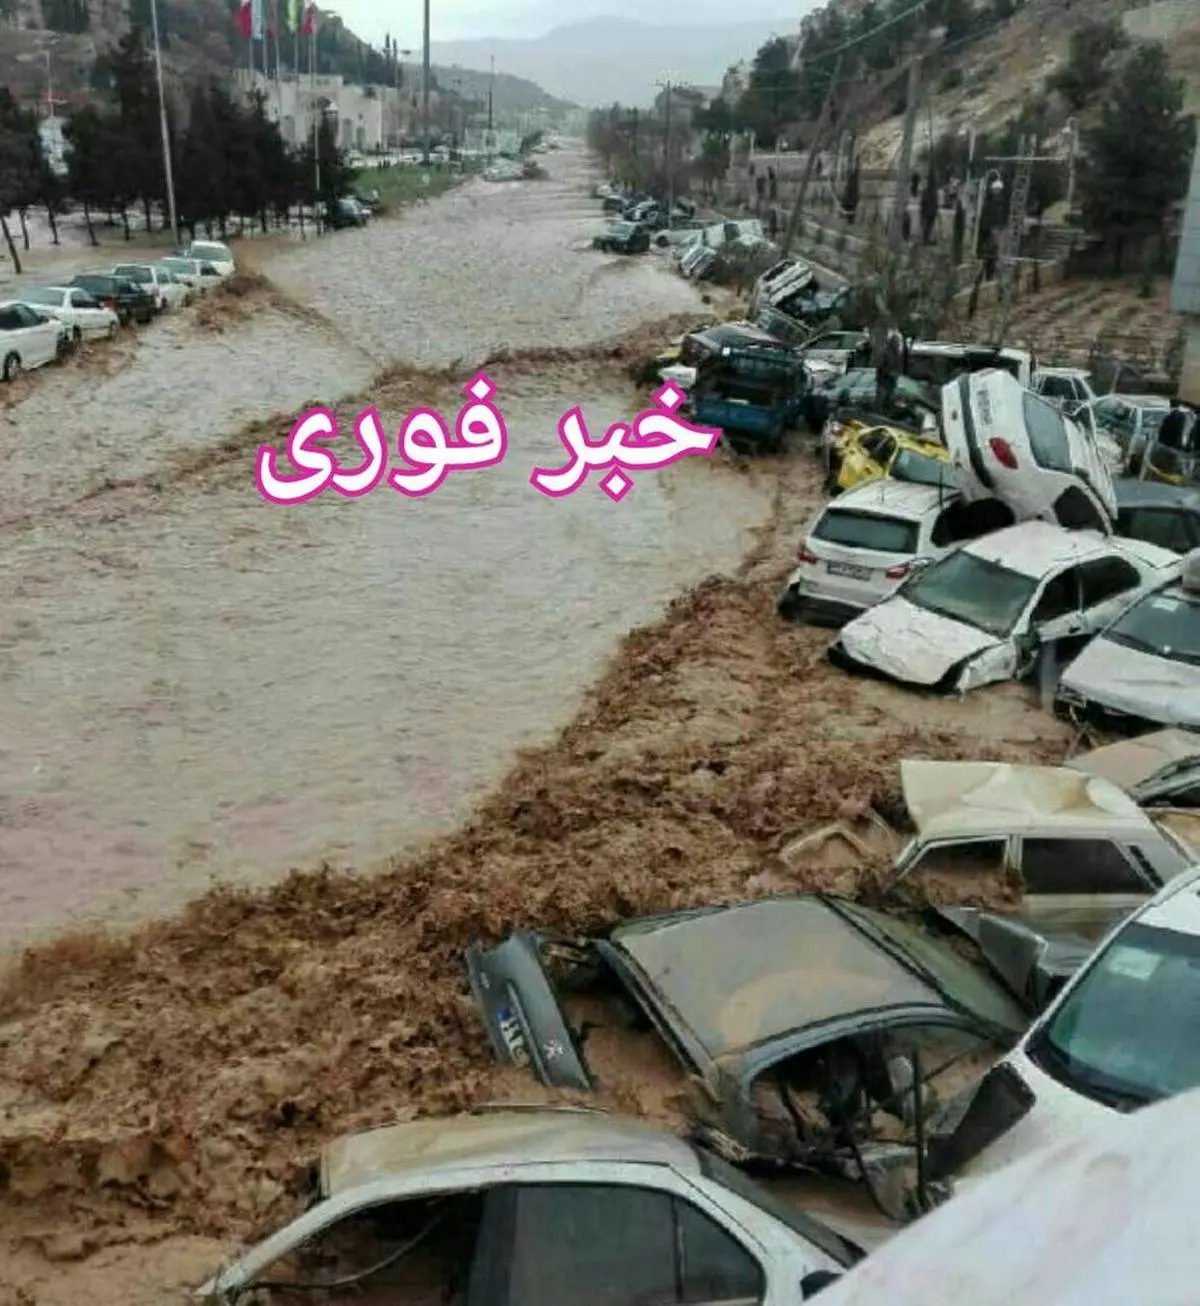 وضعیت وخیم شیراز در هنگام وقوع سیل + فیلم و تصاویر